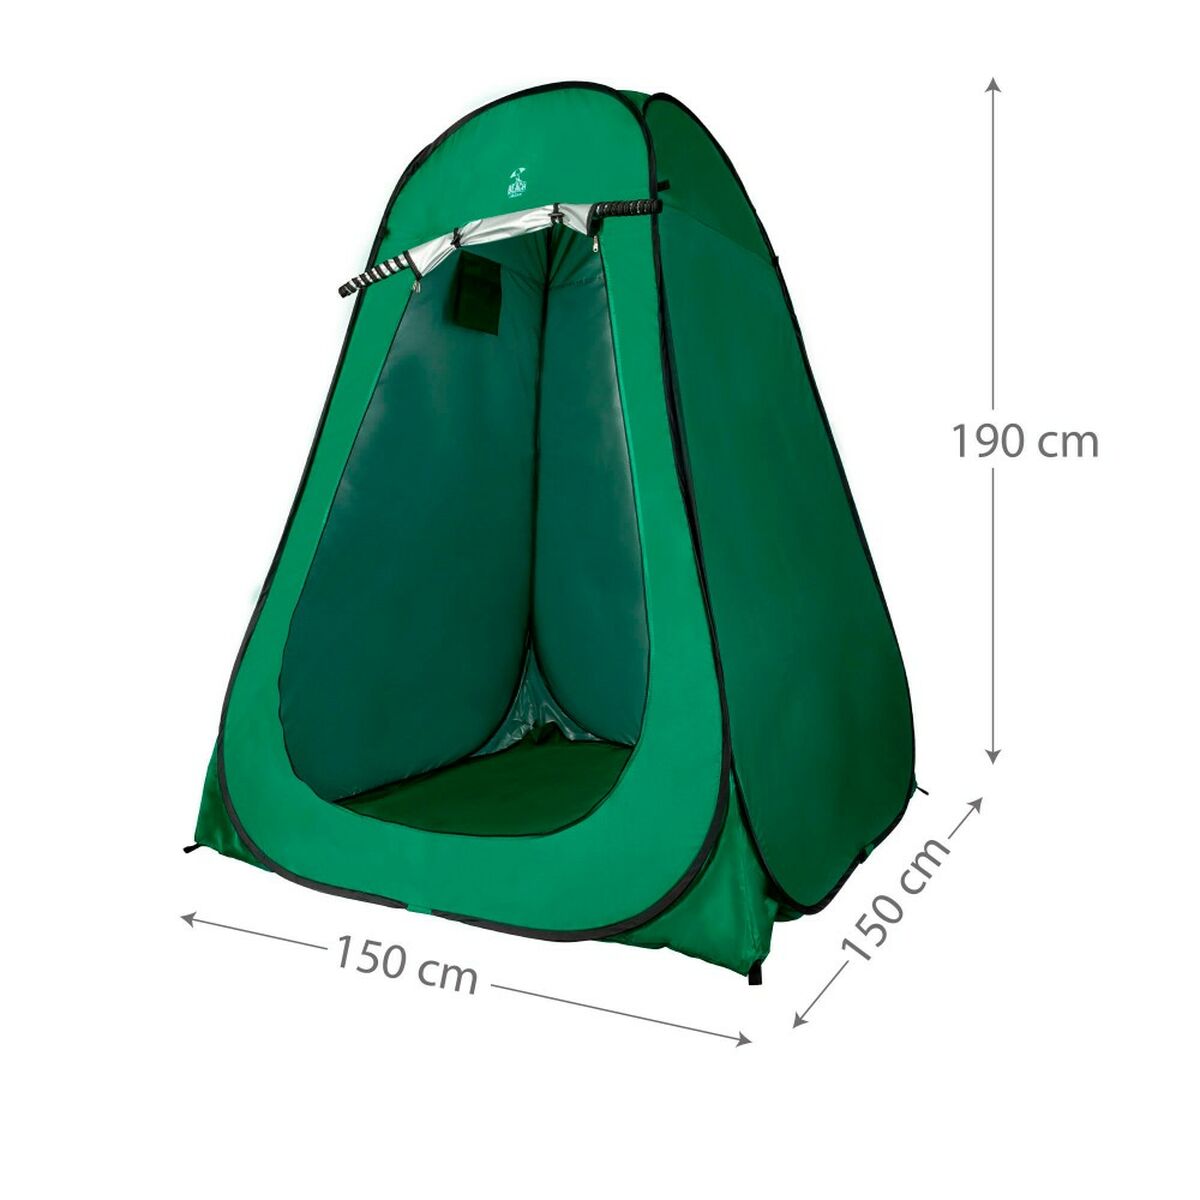 Tenda da Campeggio Aktive 150 x 190 x 150 cm (2 Unità)